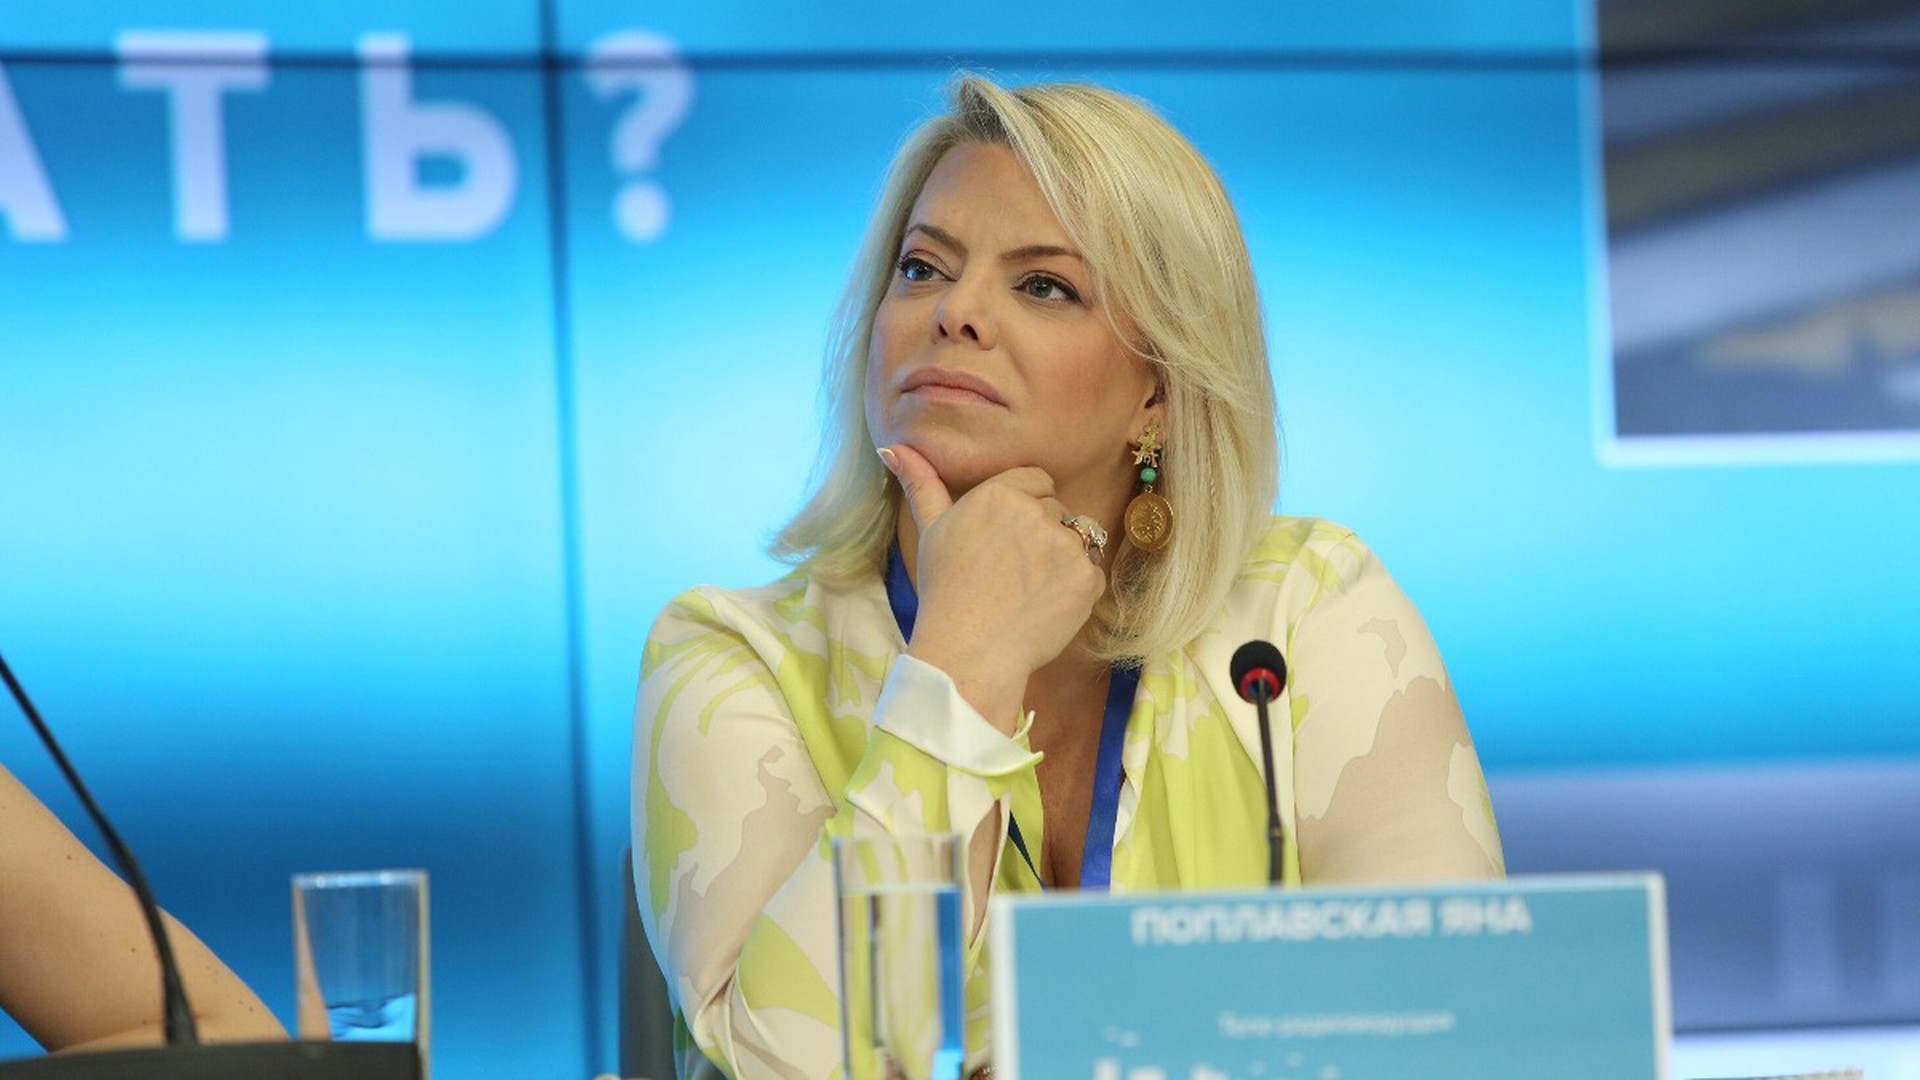 Яна Поплавская отказалась от интервью с Ксенией Собчак: «Я с ней в одном поле не сяду»